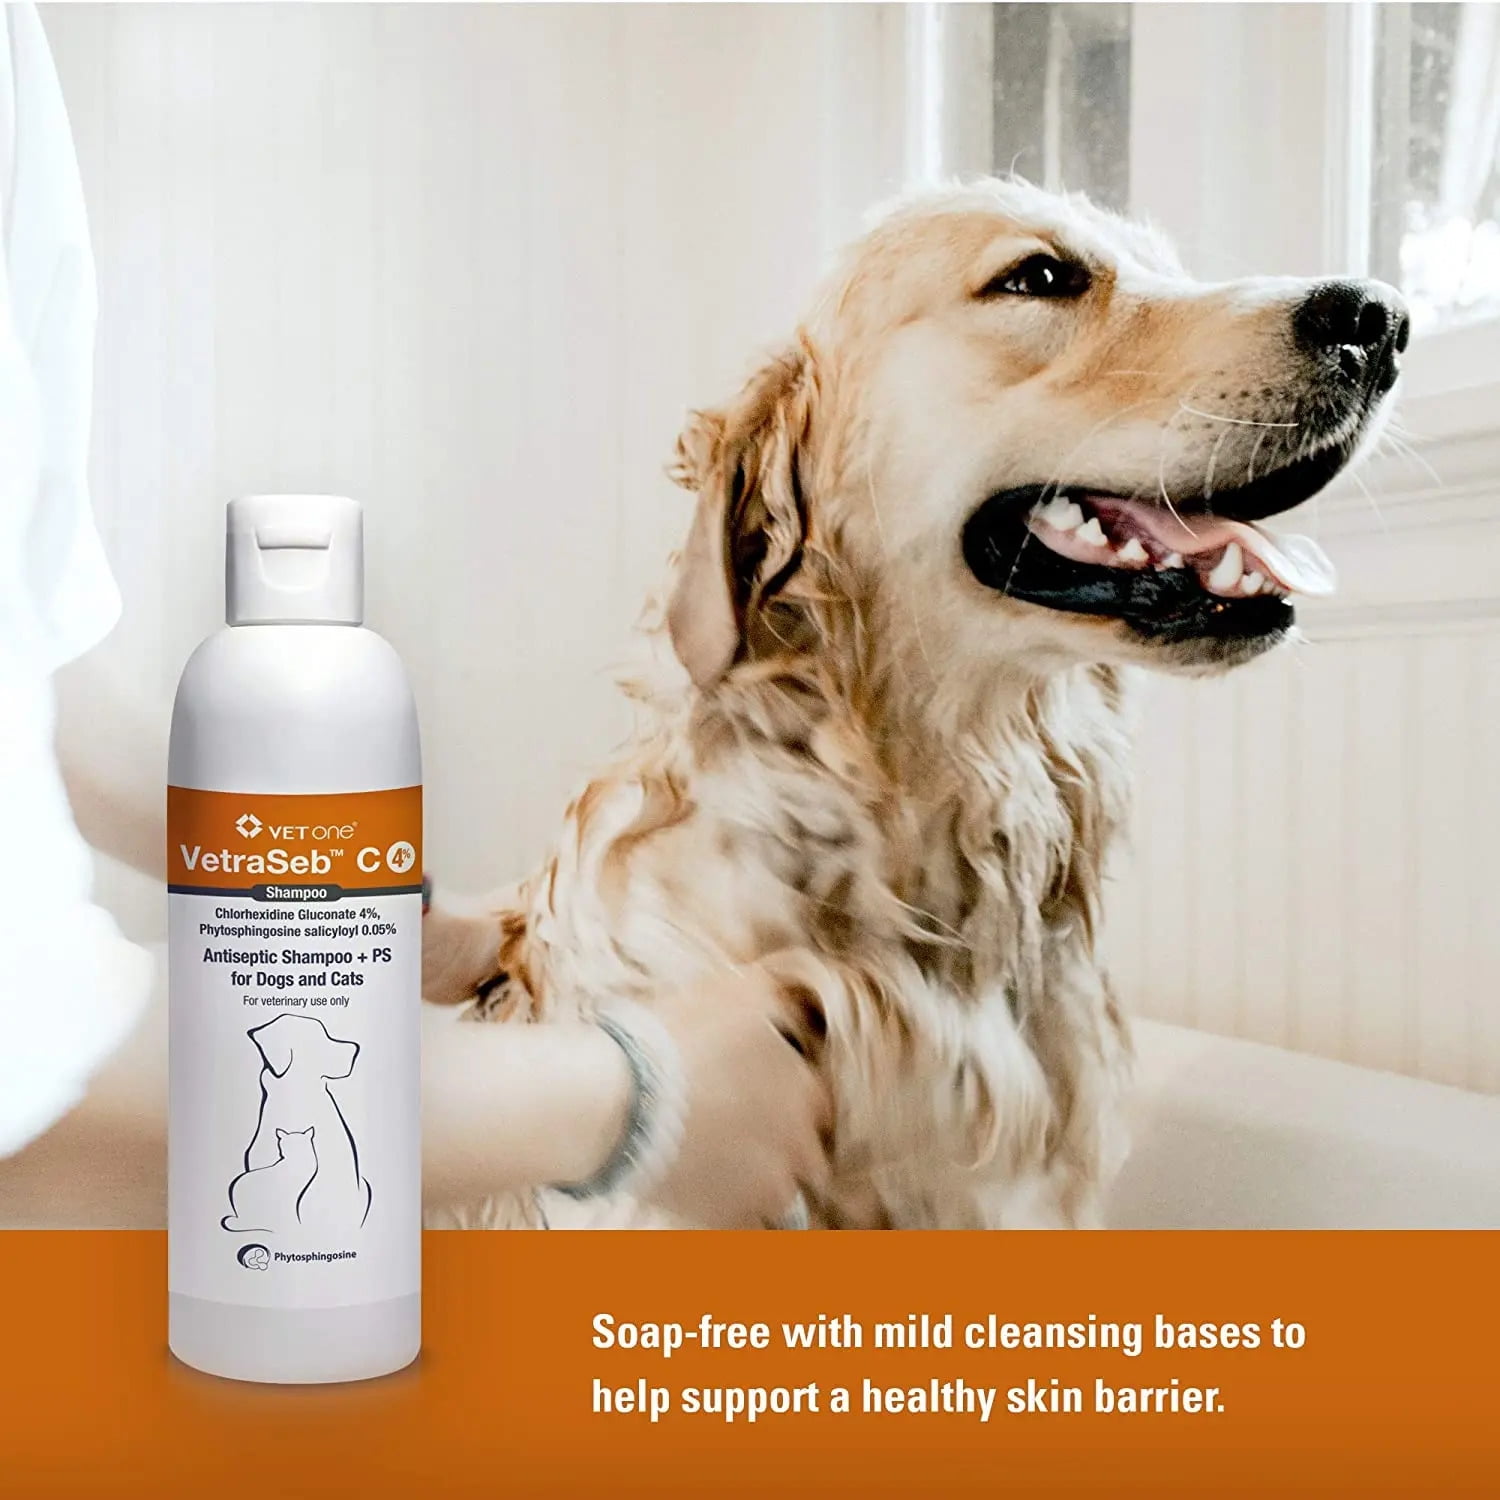 Pharmaseb Pet Spray  Animal Pharmaceuticals